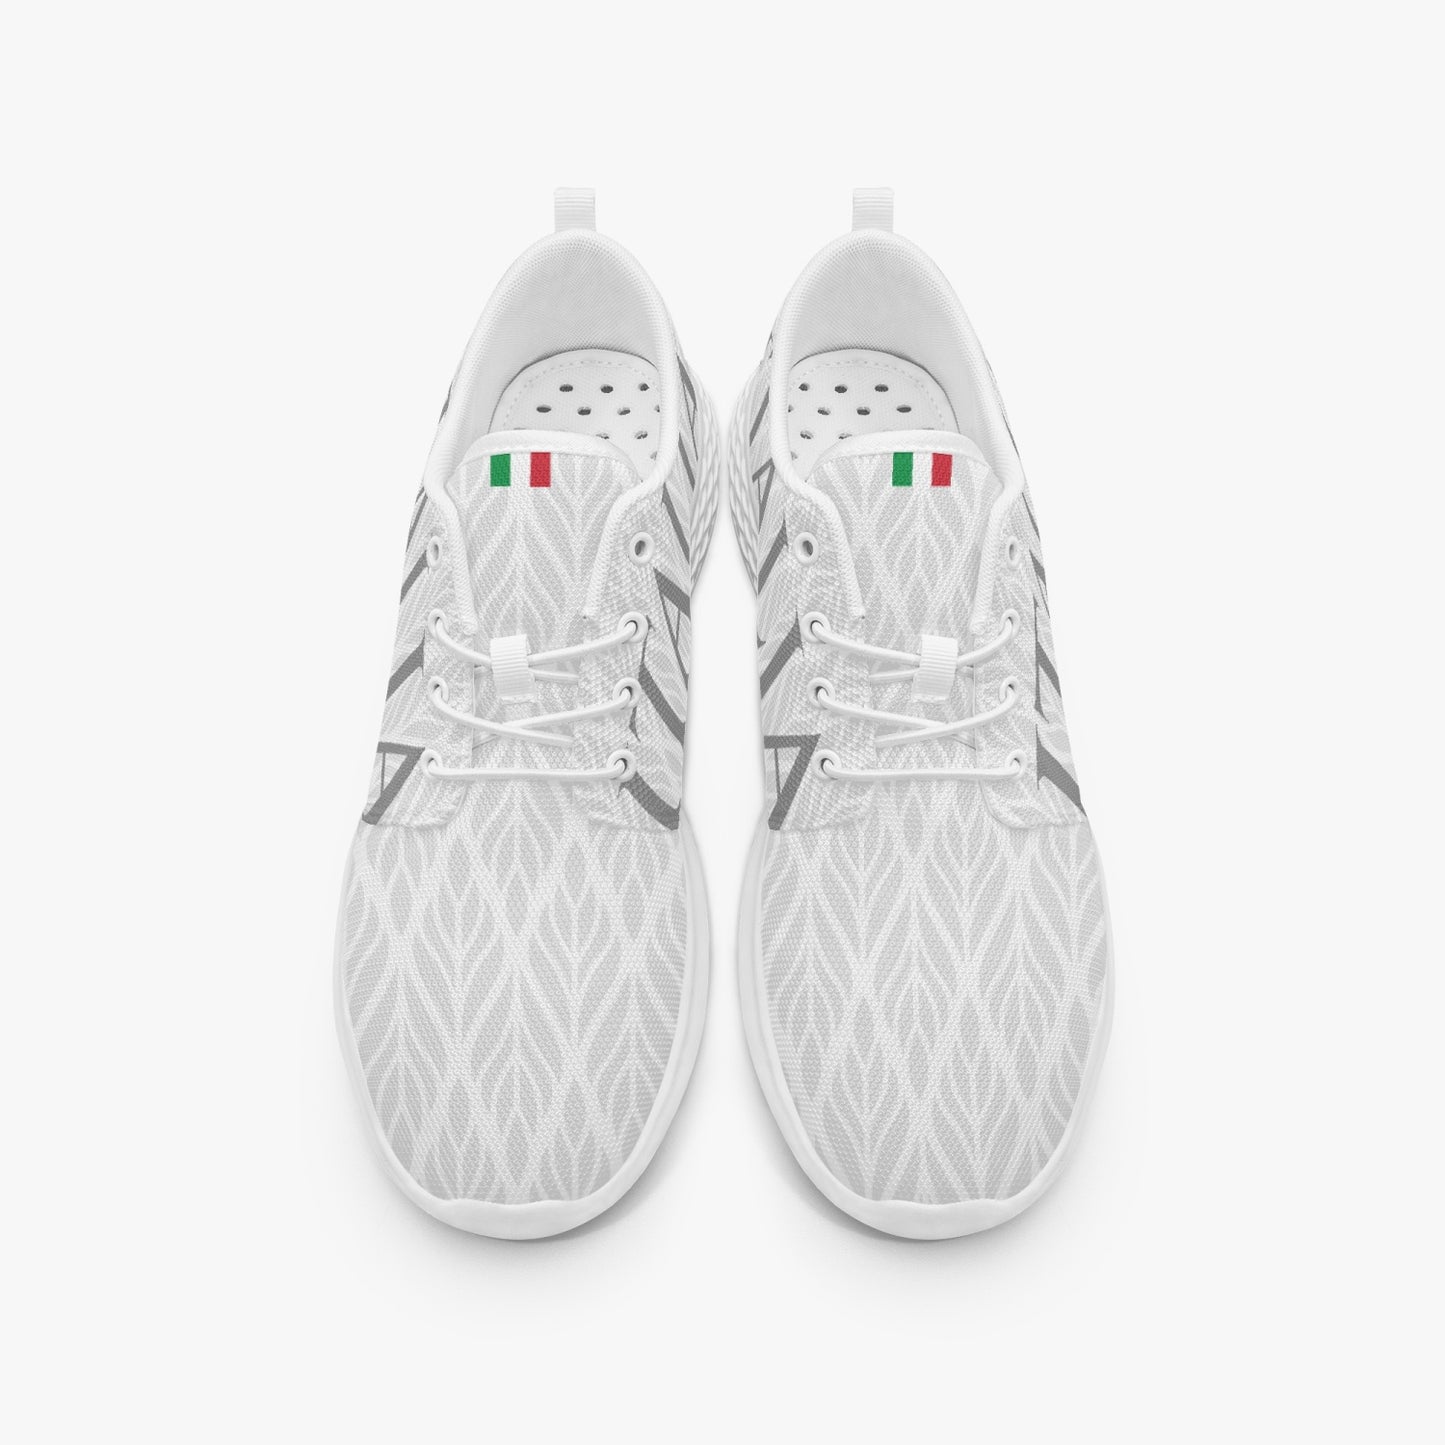 Scarpe da corsa Italia bianche